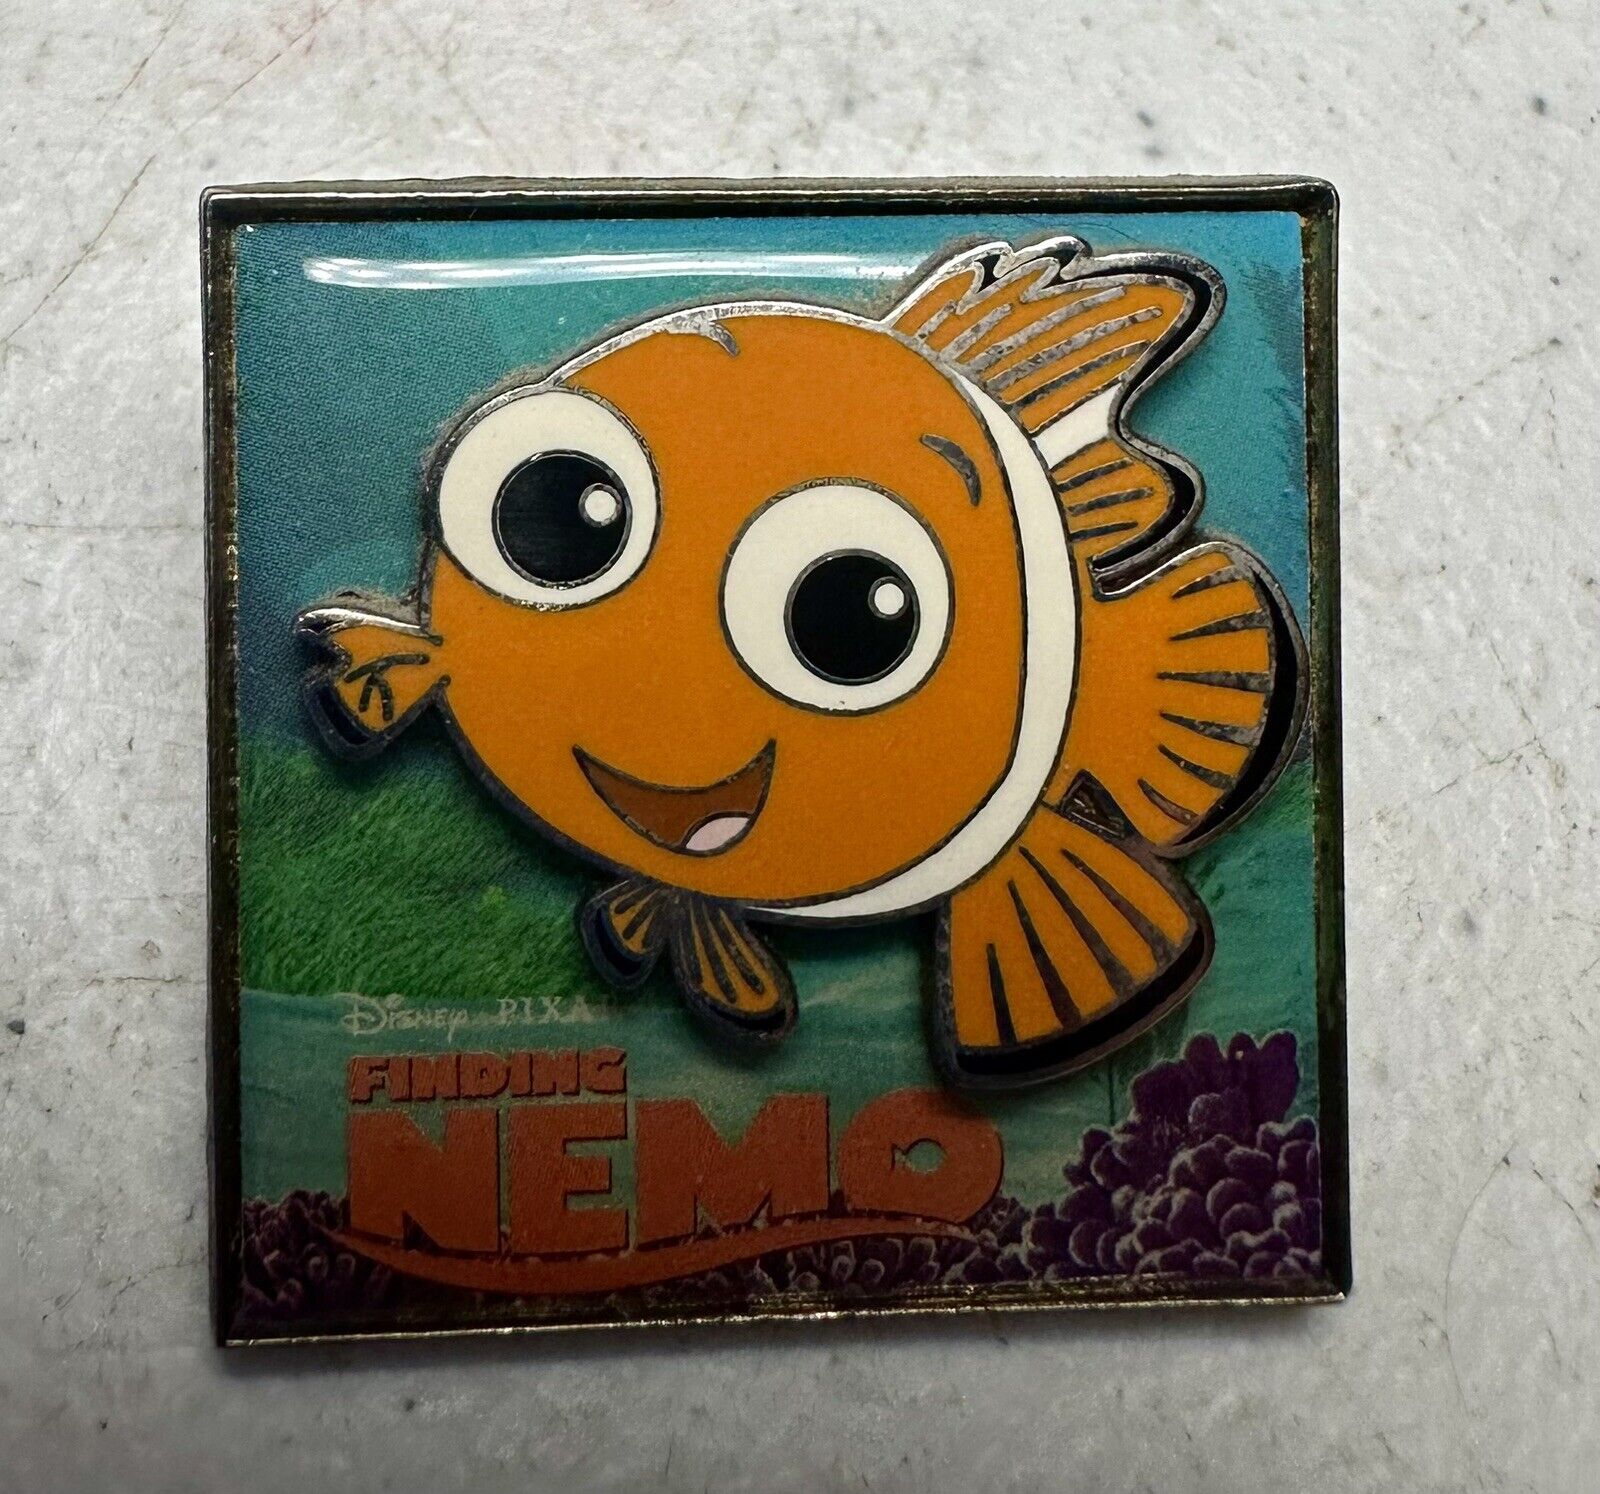 DISNEY Pixar Baby  Finding Nemo 3D Pin 2005